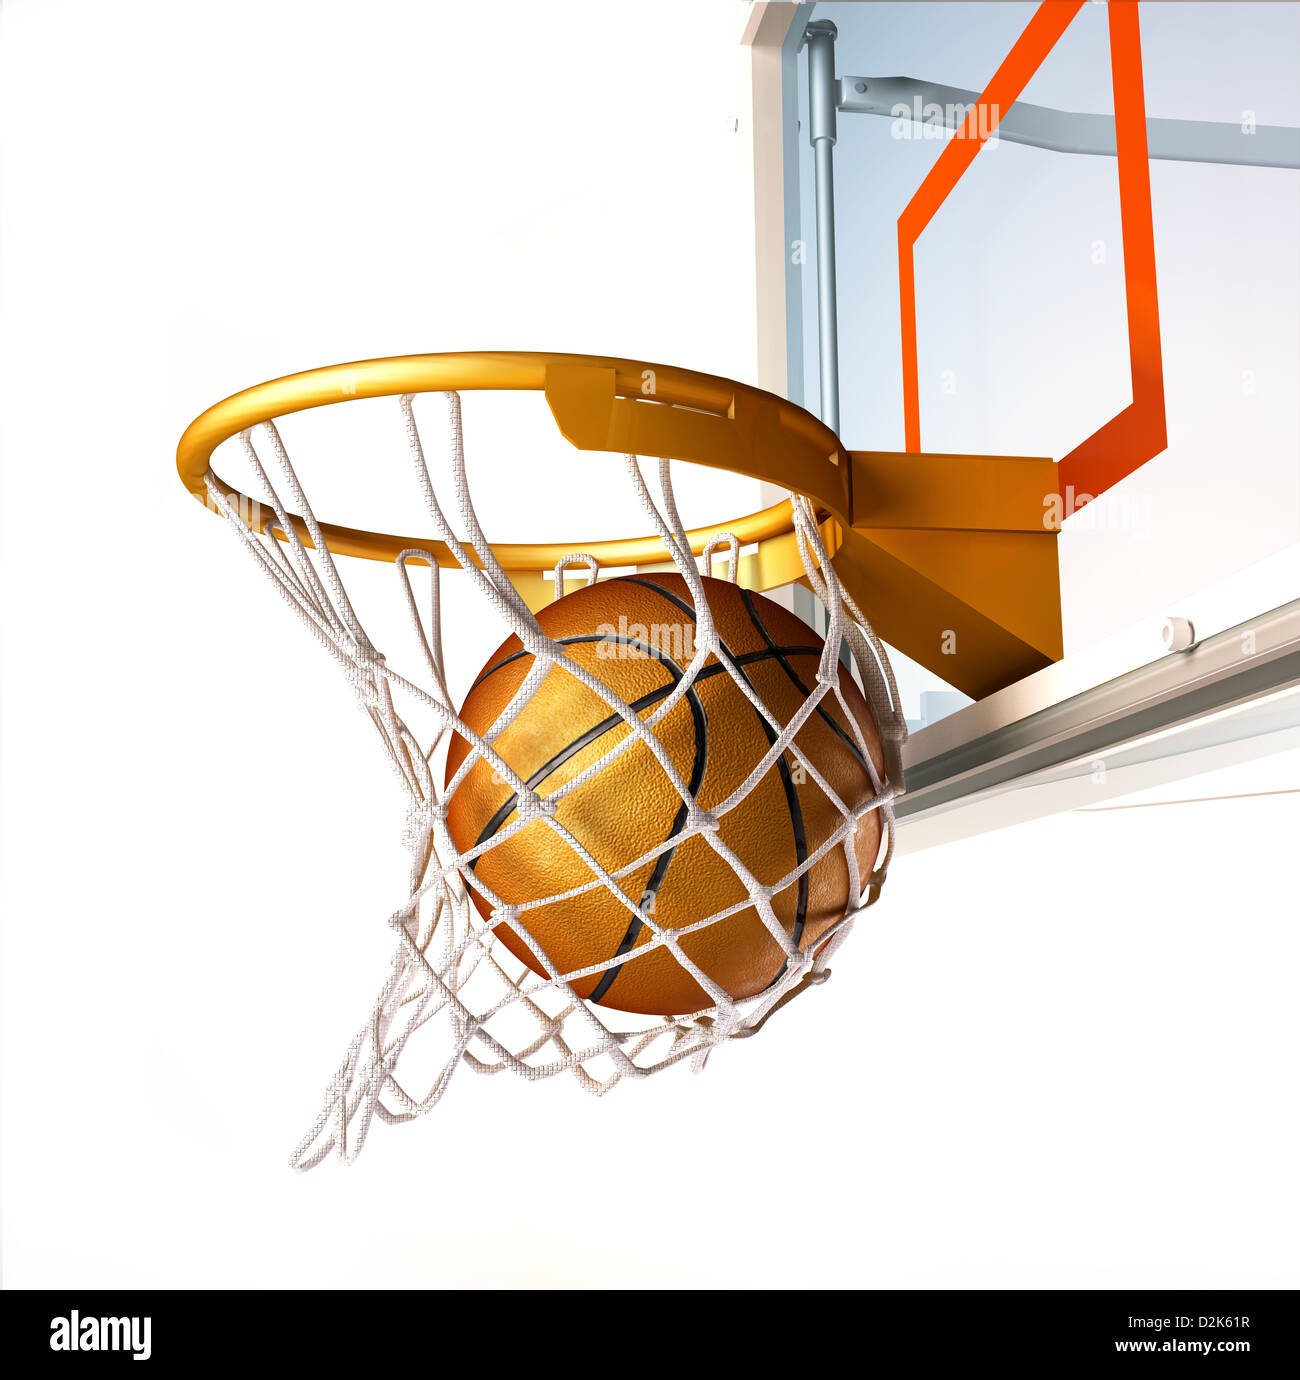 Centrar la canasta de baloncesto, con el balón dentro de la red